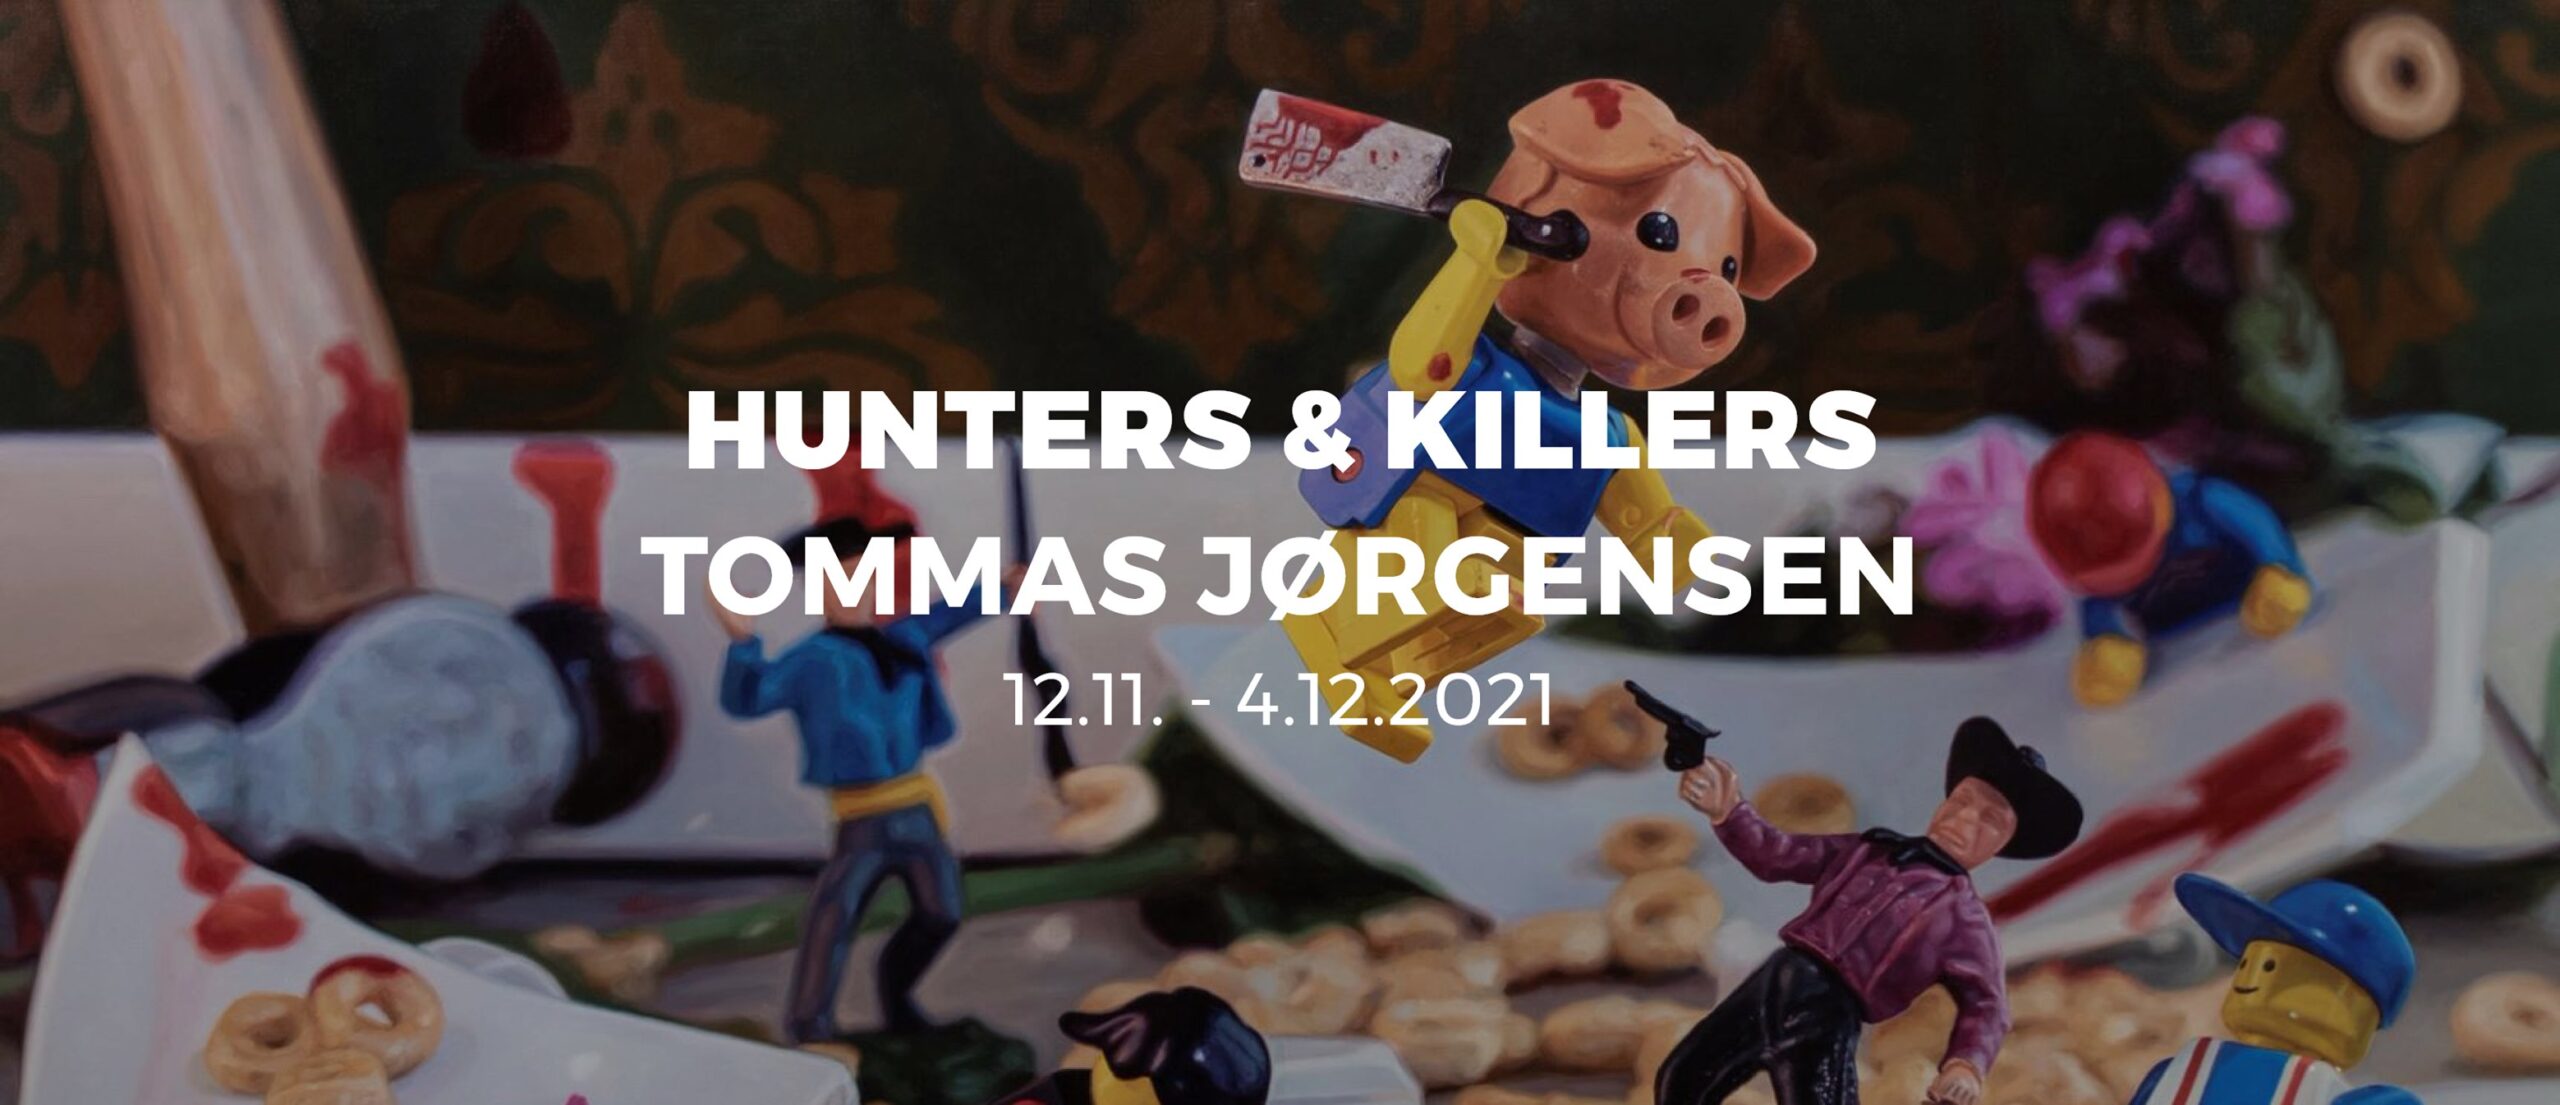 Tommas Jørgensen: - HUNTERS & KILLERS